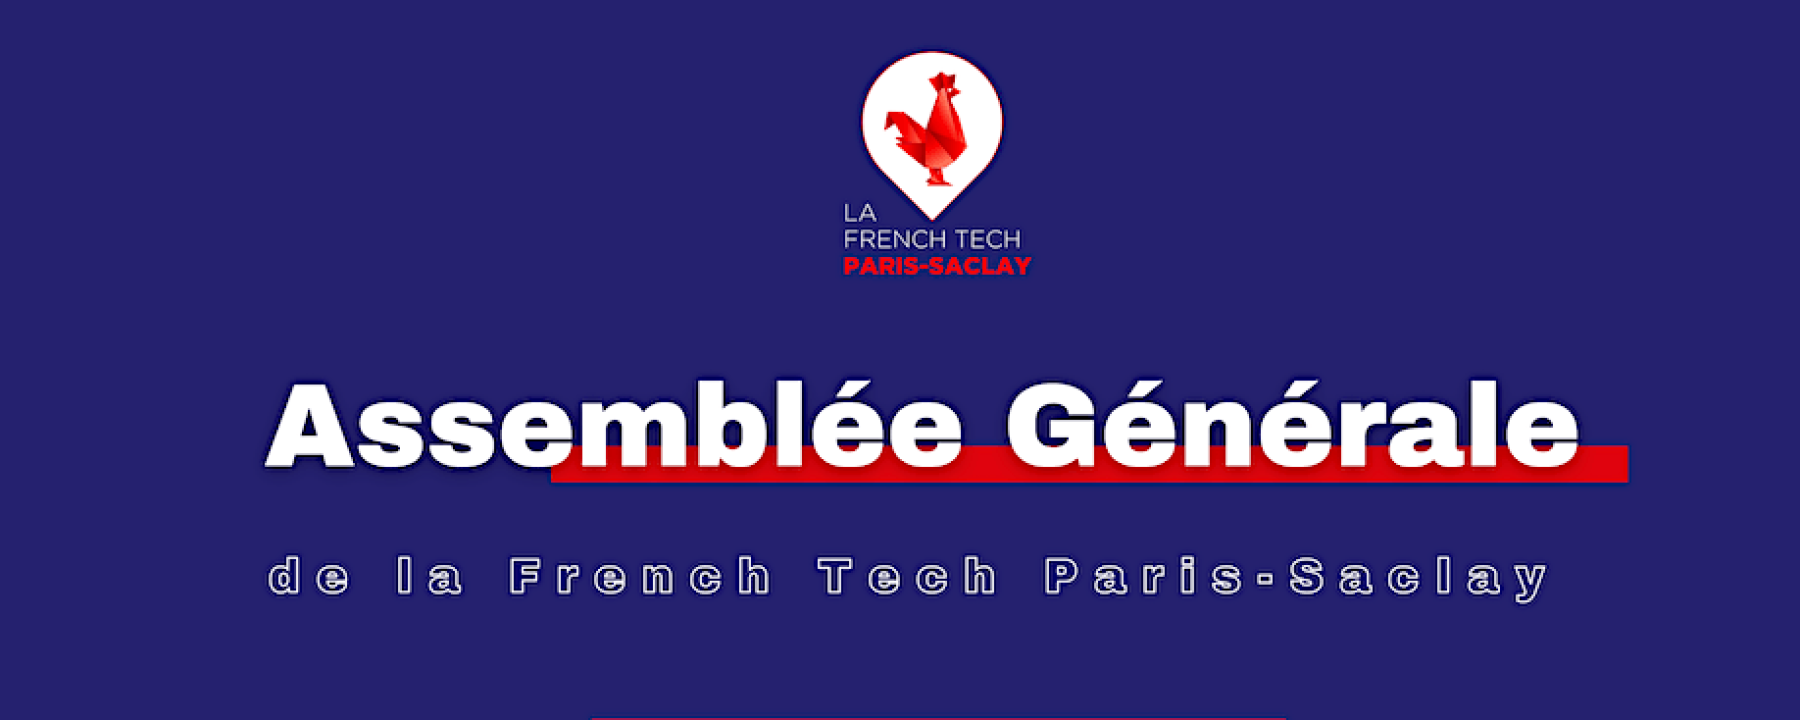 Assemblée Générale de La French Tech Paris-Saclay